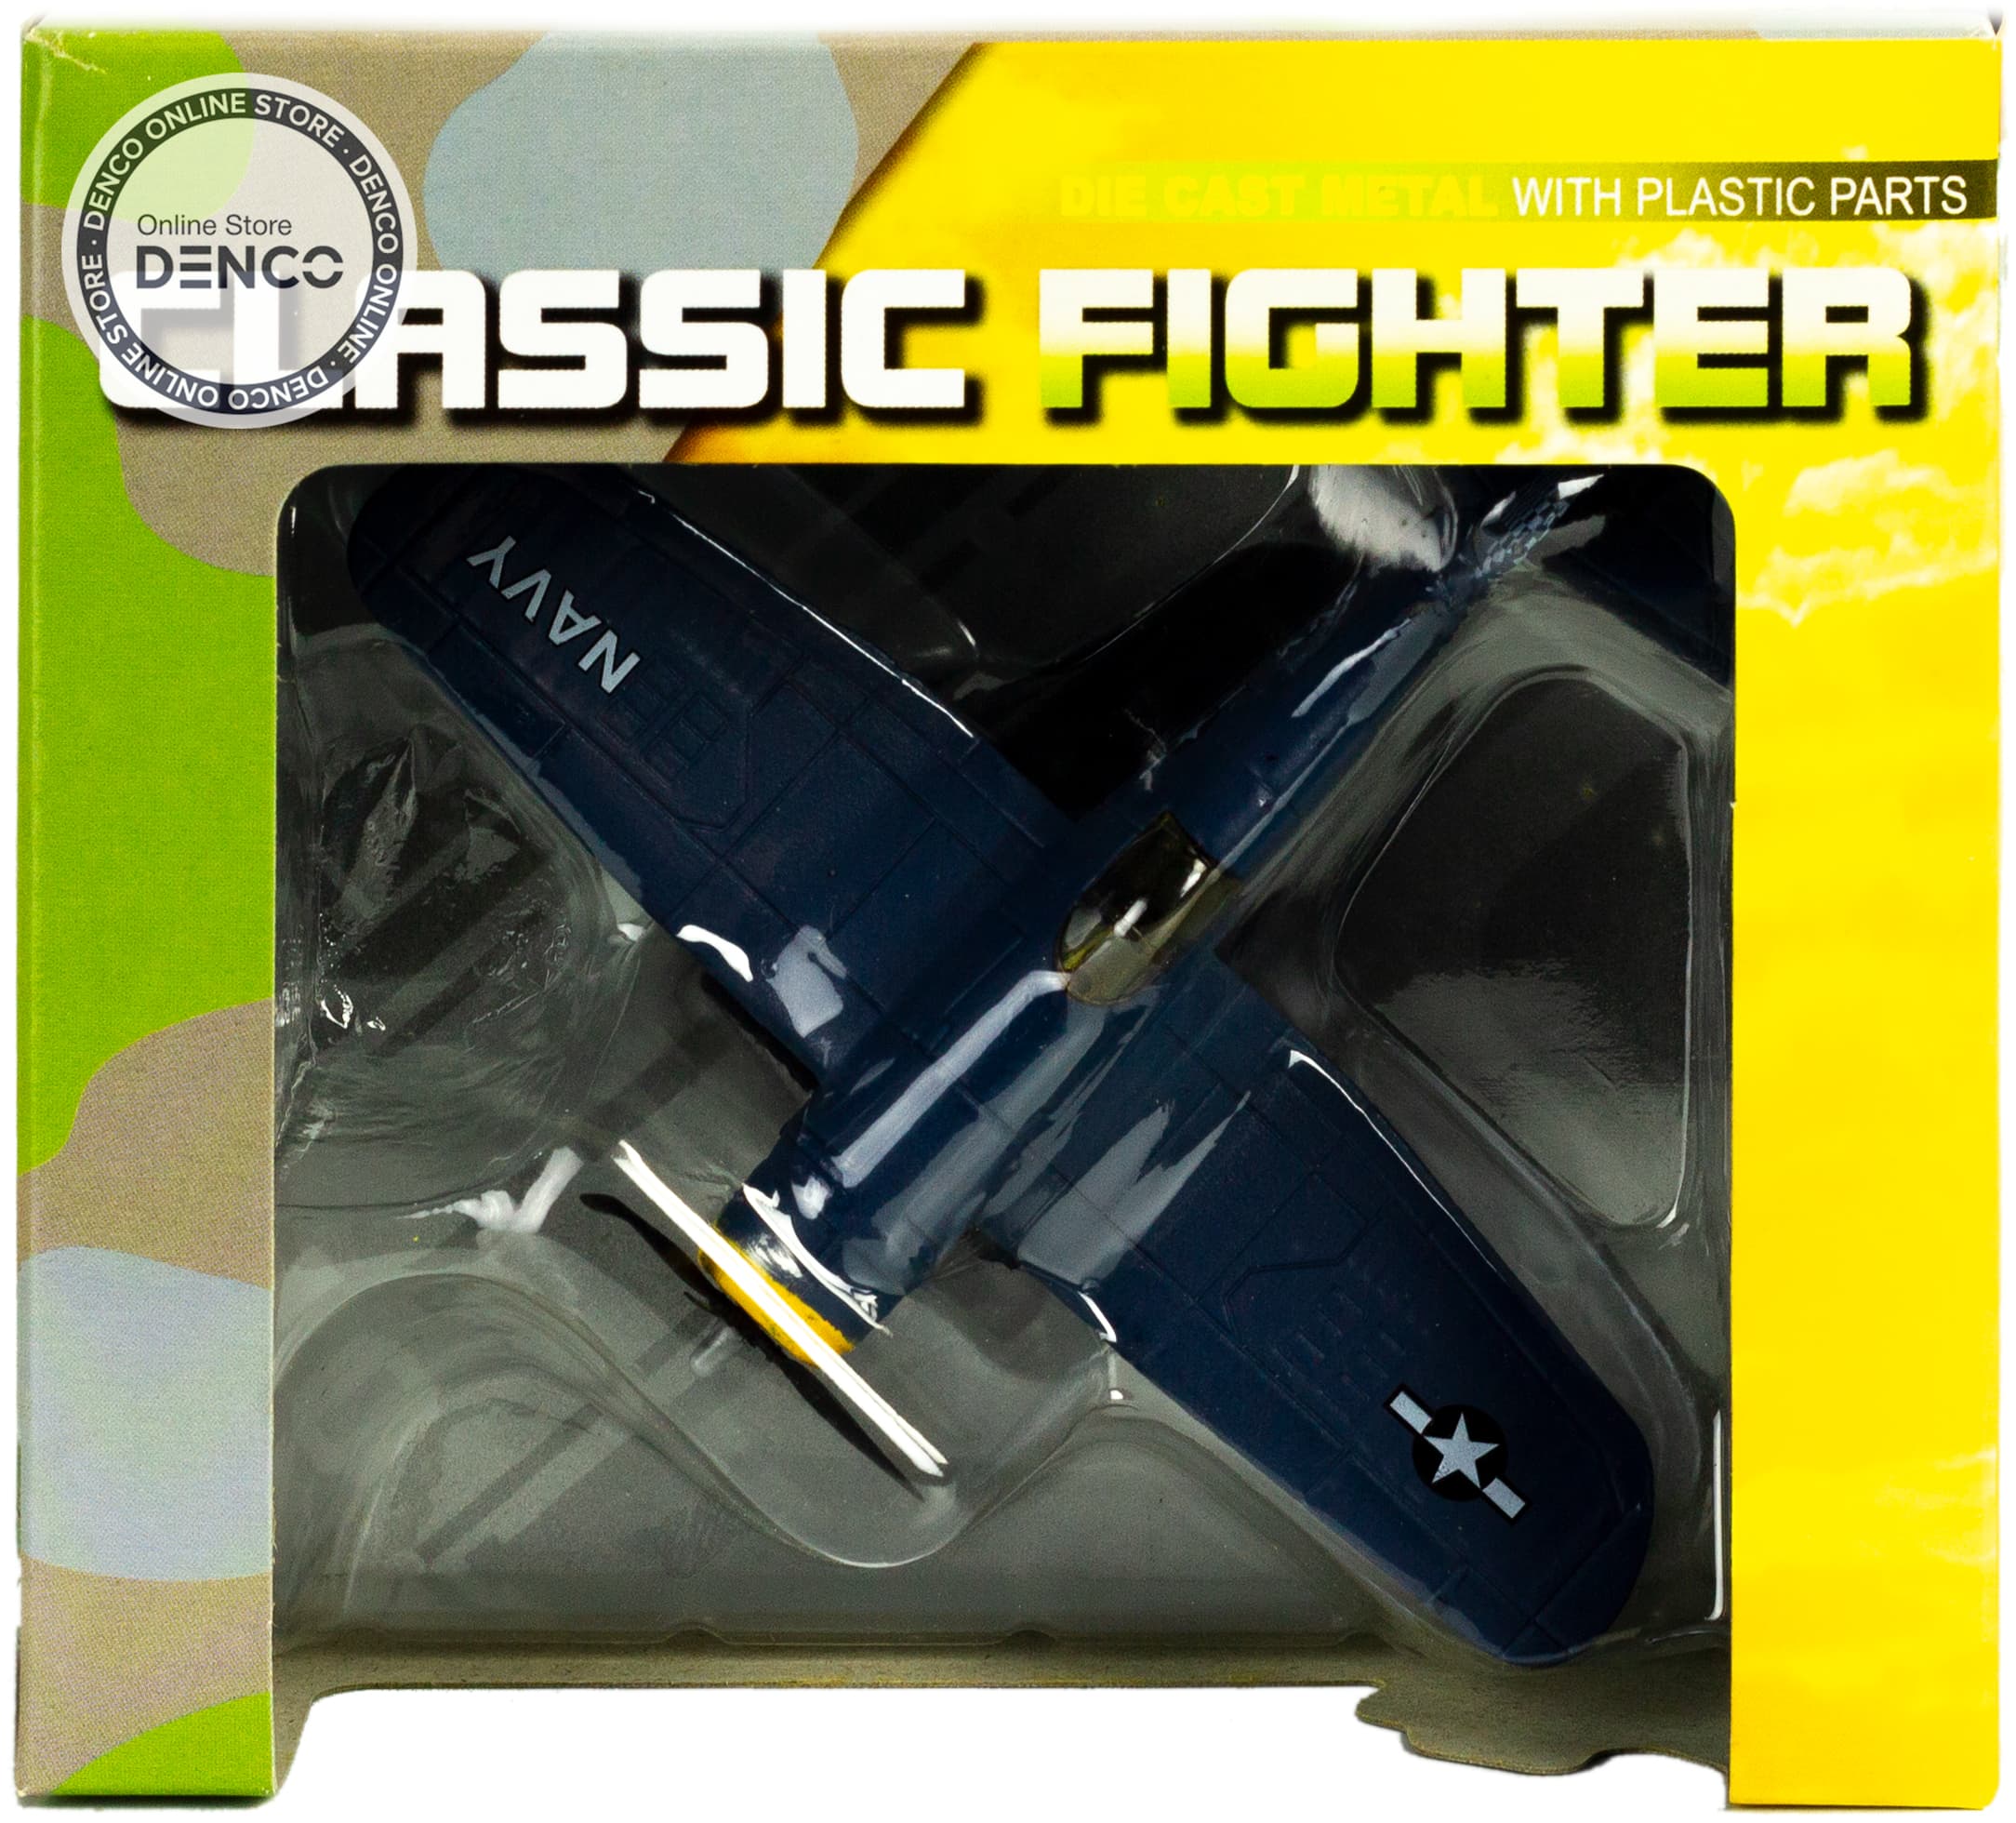 Металлическая модель военного самолета-истребителя Classic Fighter 10 см. F8211012B, винтовой, на подставке / Микс